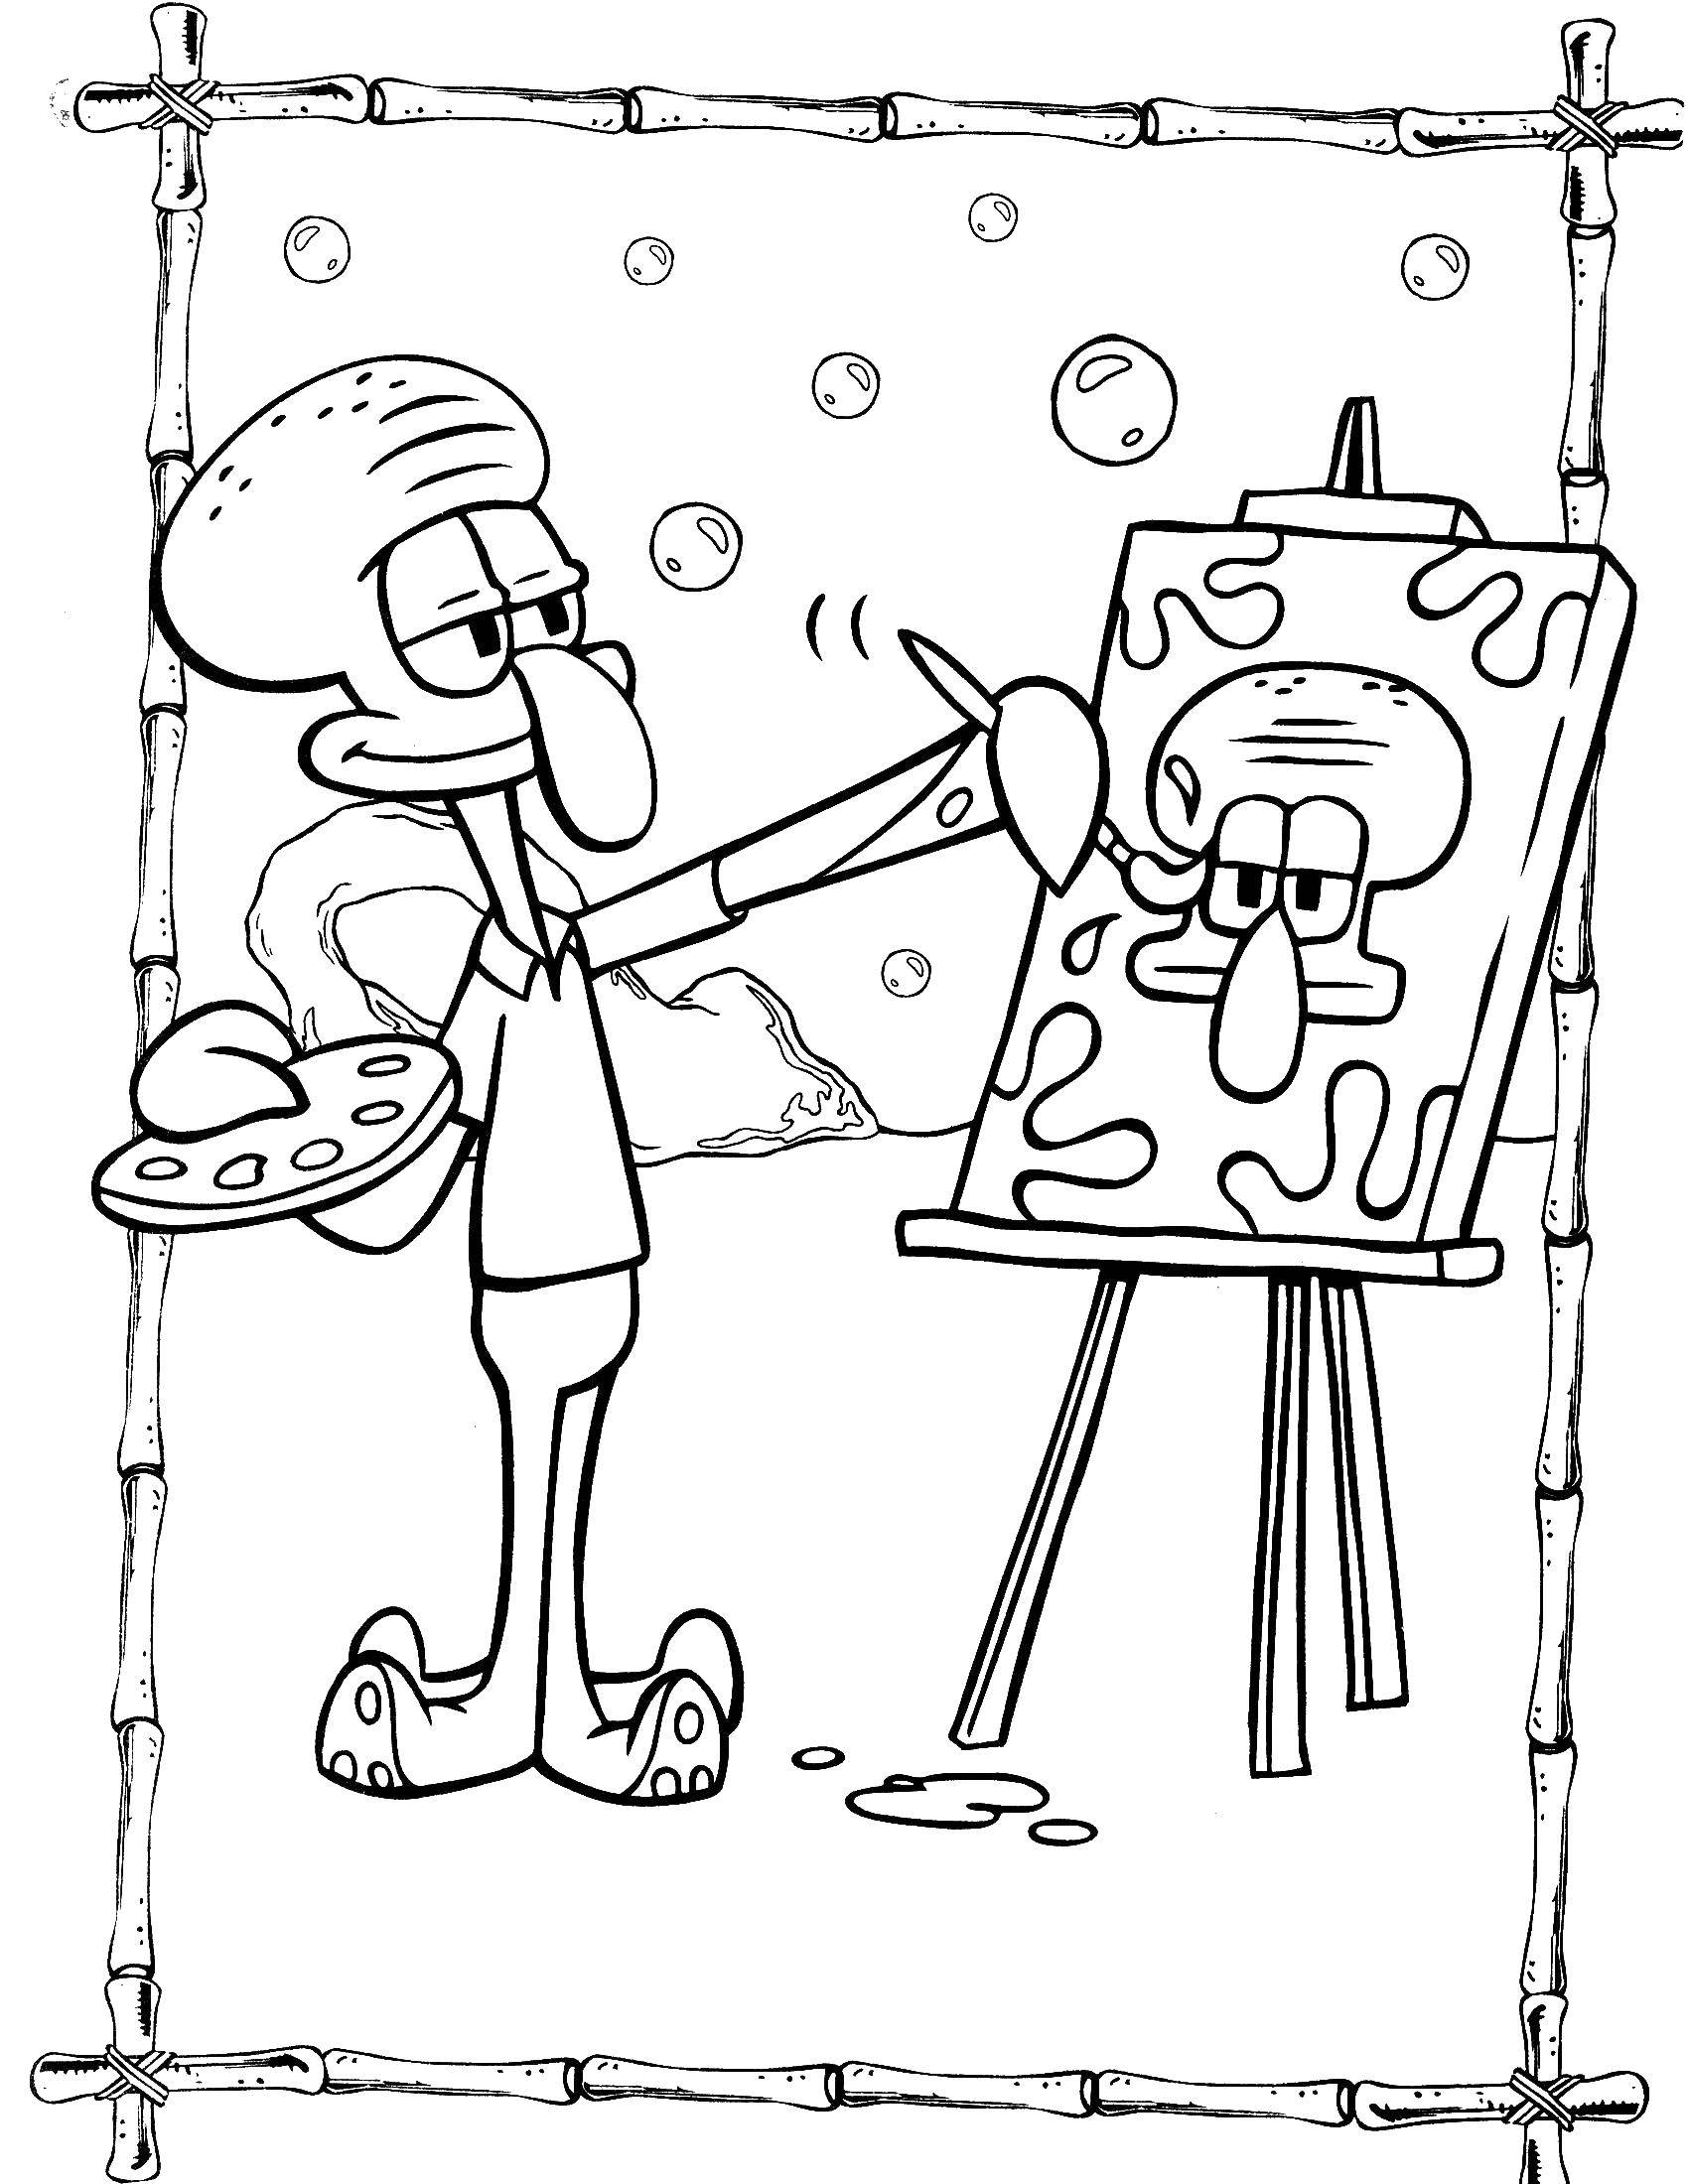 Coloring Squidward paints a portrait. Category Spongebob. Tags:  spongebob, Patrick.